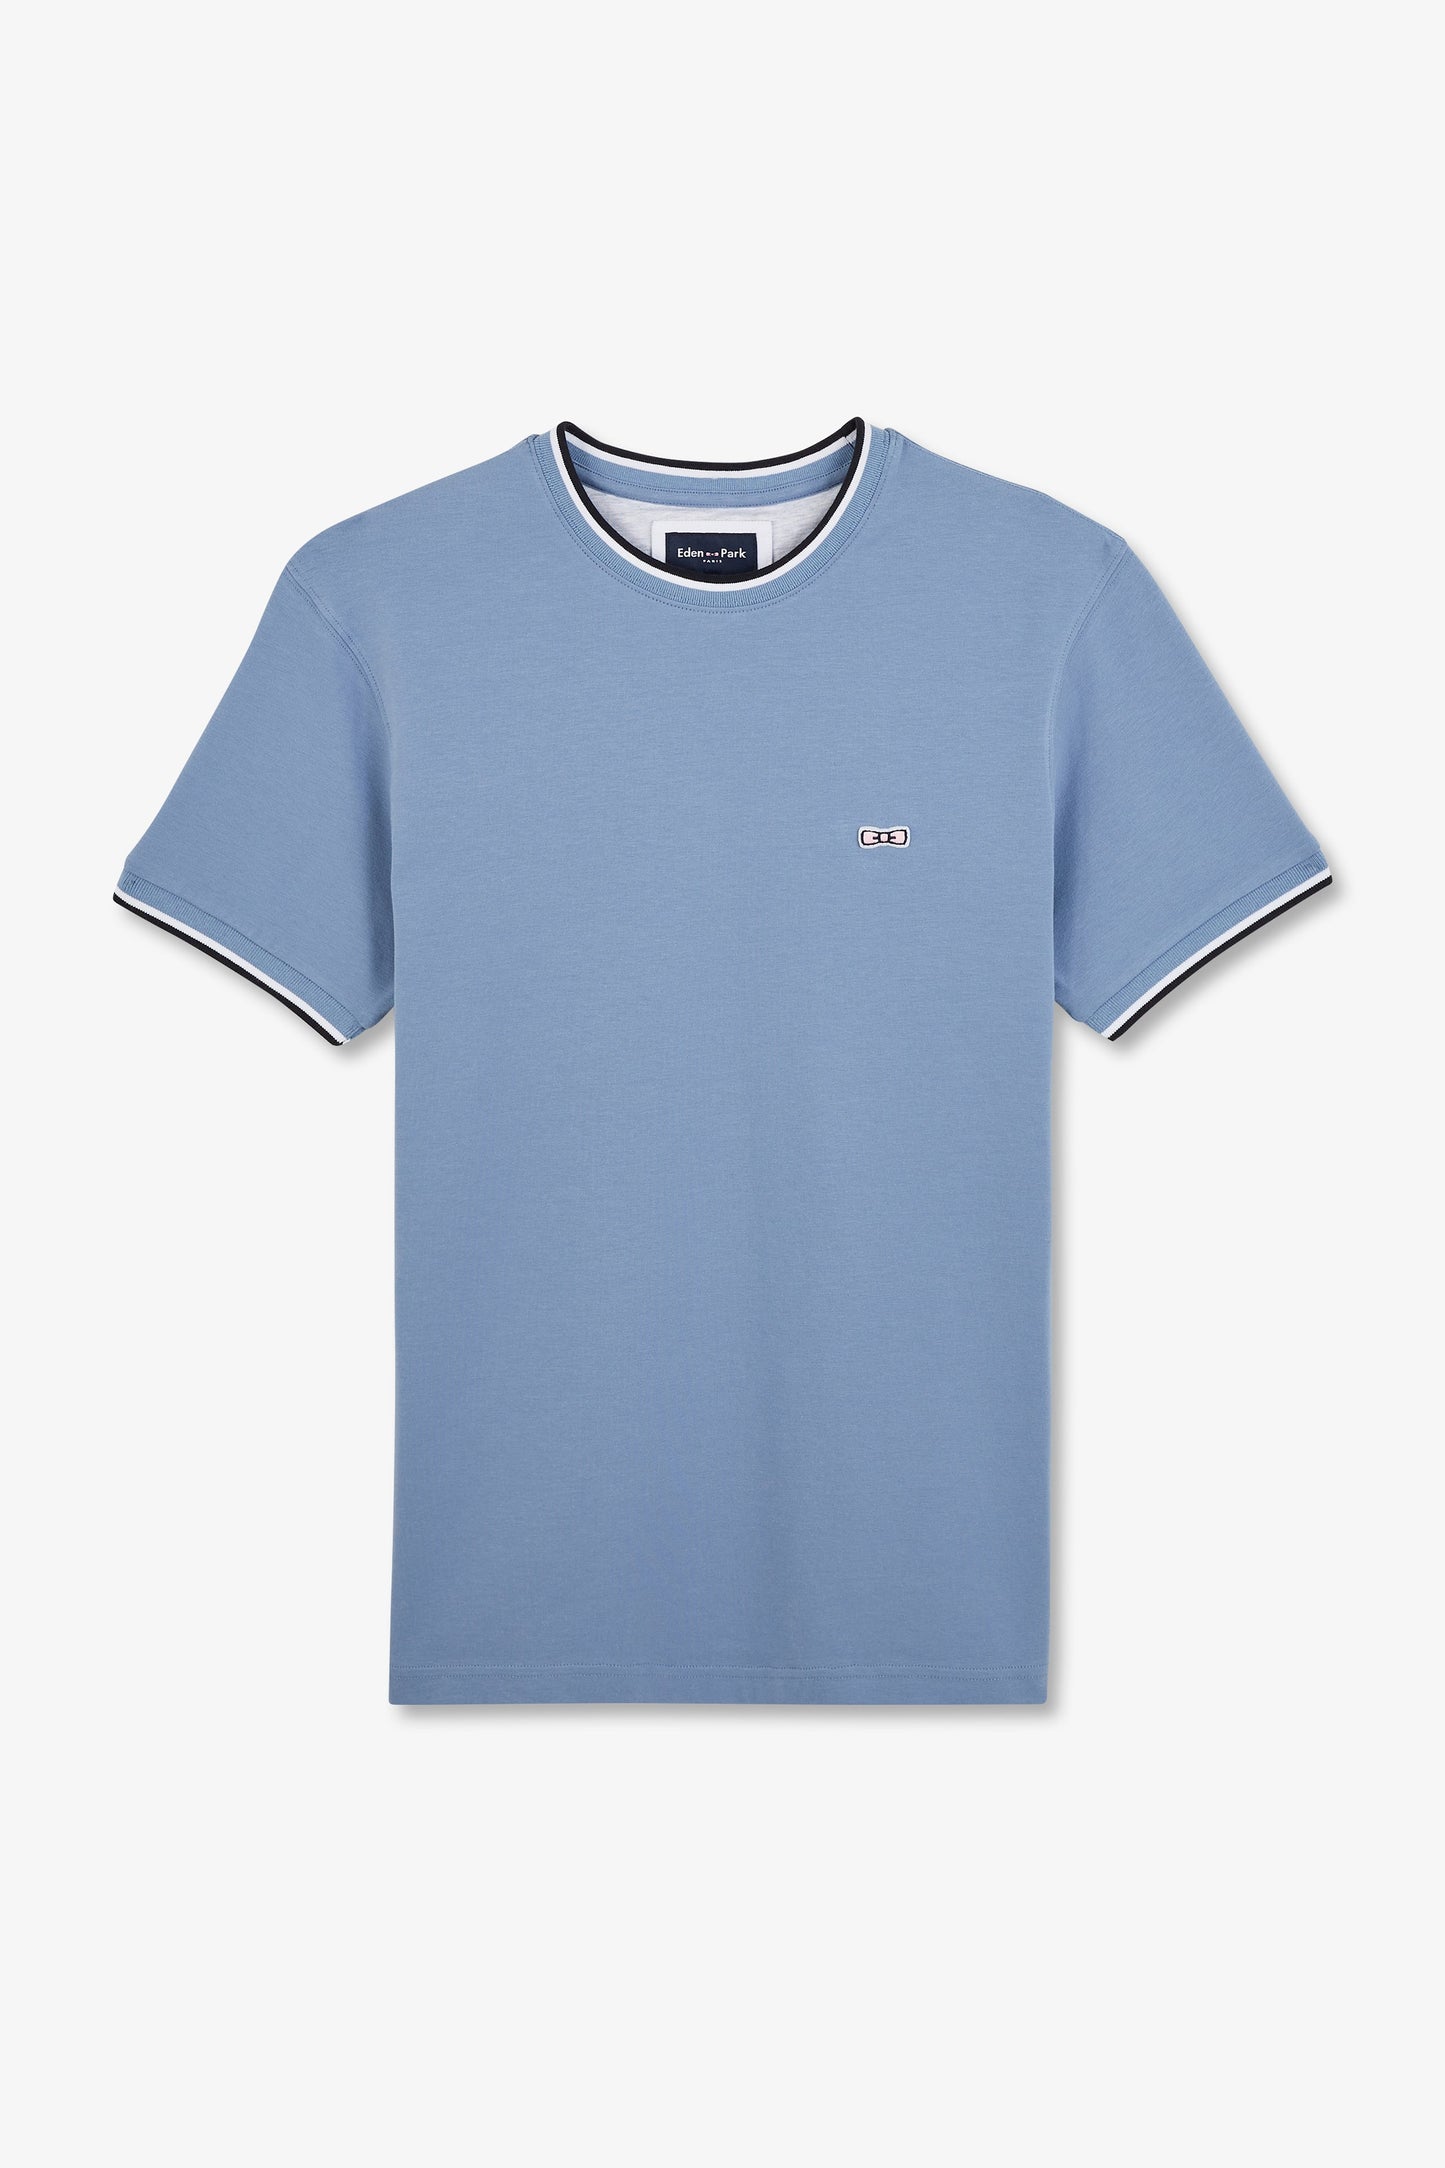 T-shirt bleu uni à manches courtes - Image 1